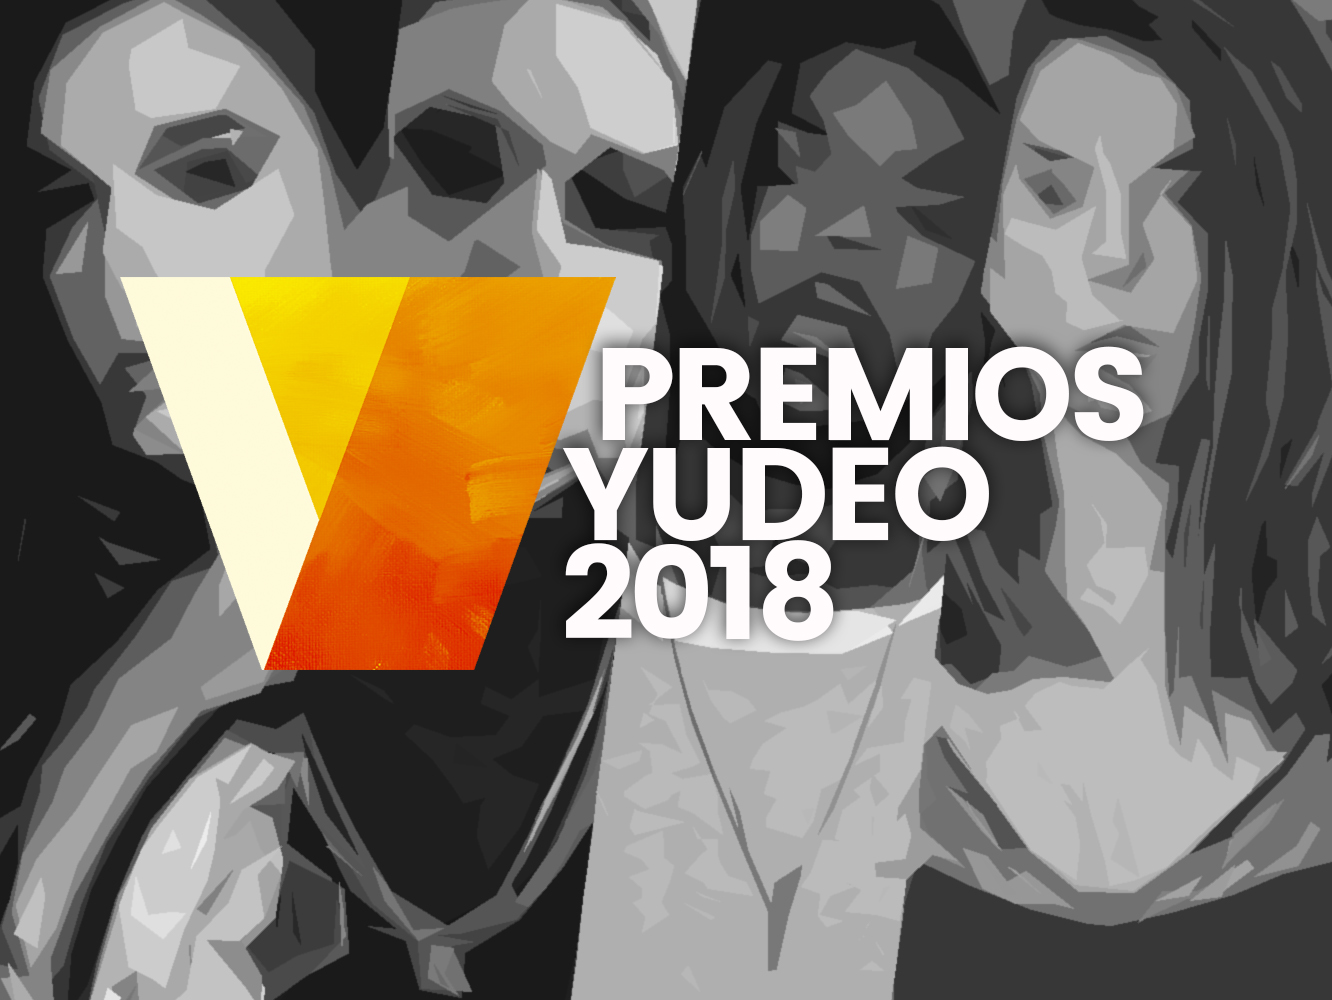 Premios Yudeo 2018 | Los nominados a Mejor Artista Solista